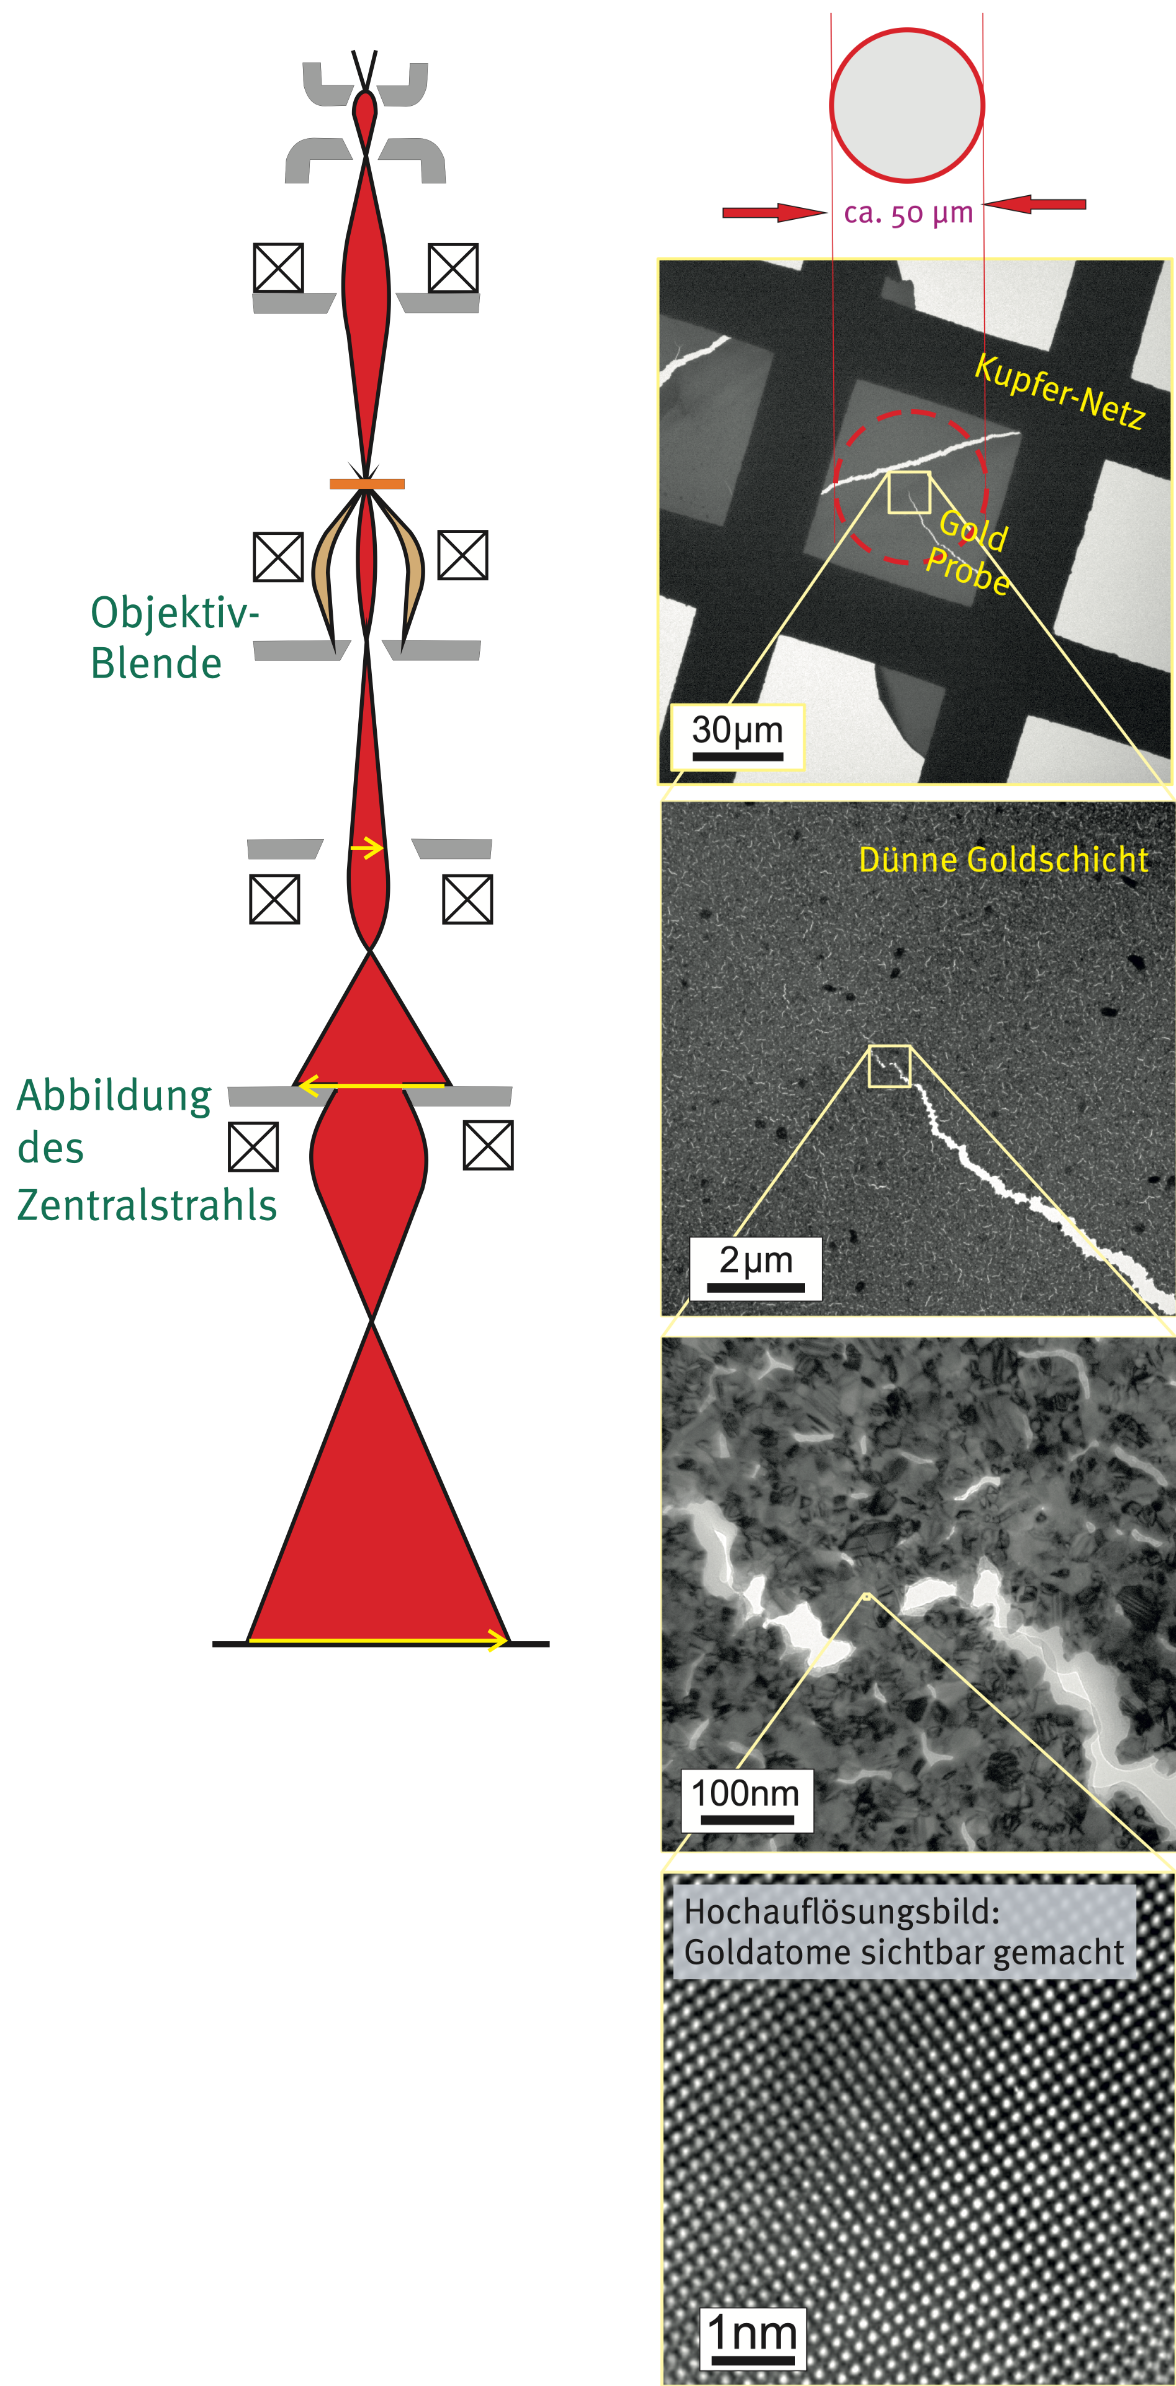 Links Strahlführung im Hellfeldmodus, rechts ein Streifen aus vier Aufnahmen einer Goldschicht, wobei das erste eine Maßstabsskala von 30 Mikrometern, das zweite von 2 Mikrometern, das dritte von 100 Nanometern und das vierte von einem Nanometer hat. Auf dem vierten Bild steht 